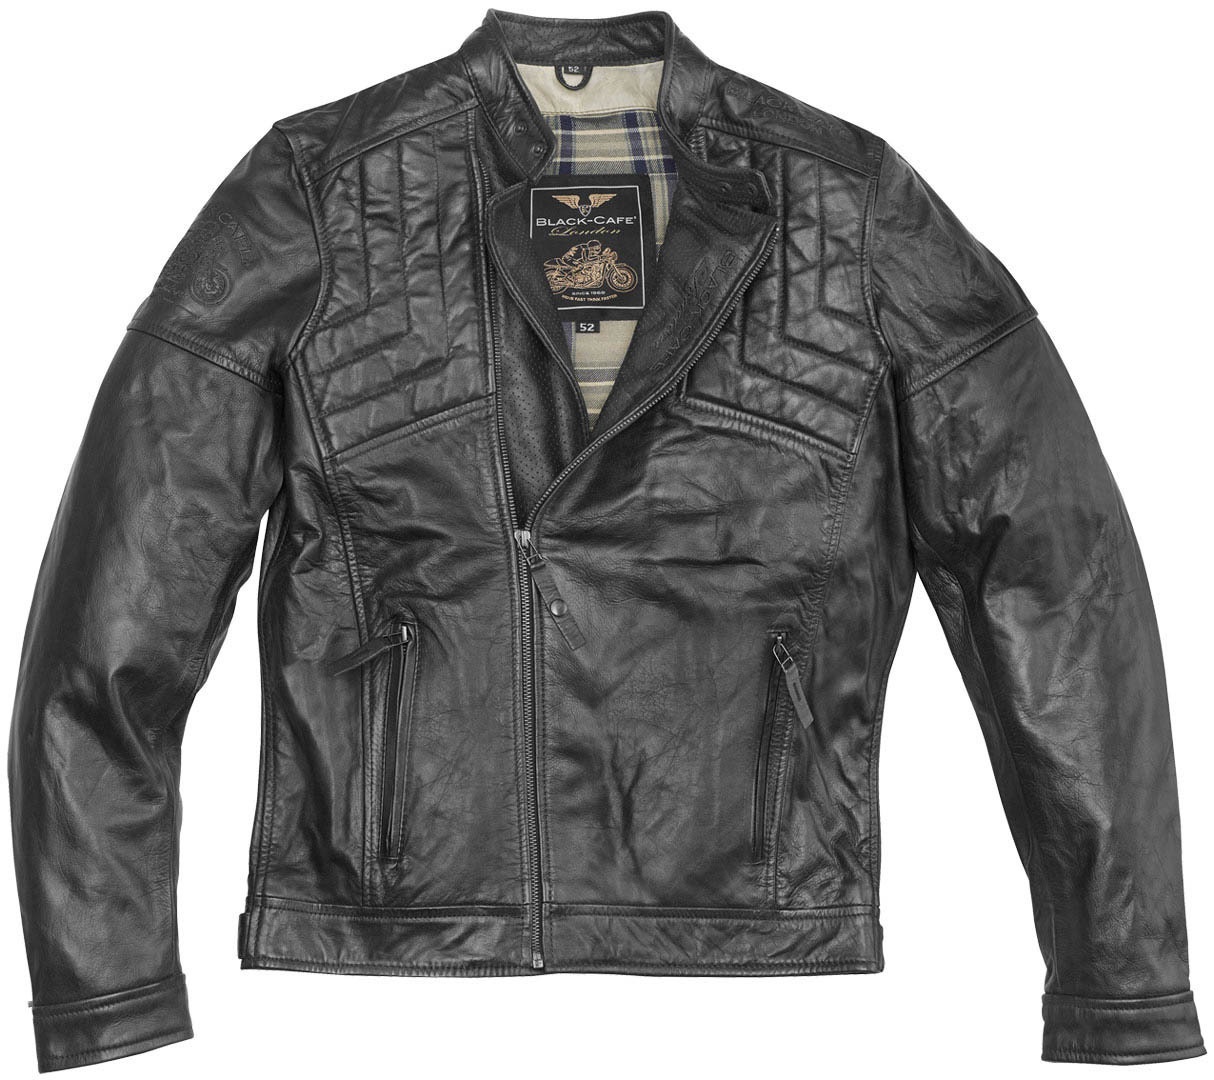 Black-Cafe London Philadelphia Motorfiets lederen jas, zwart, 50